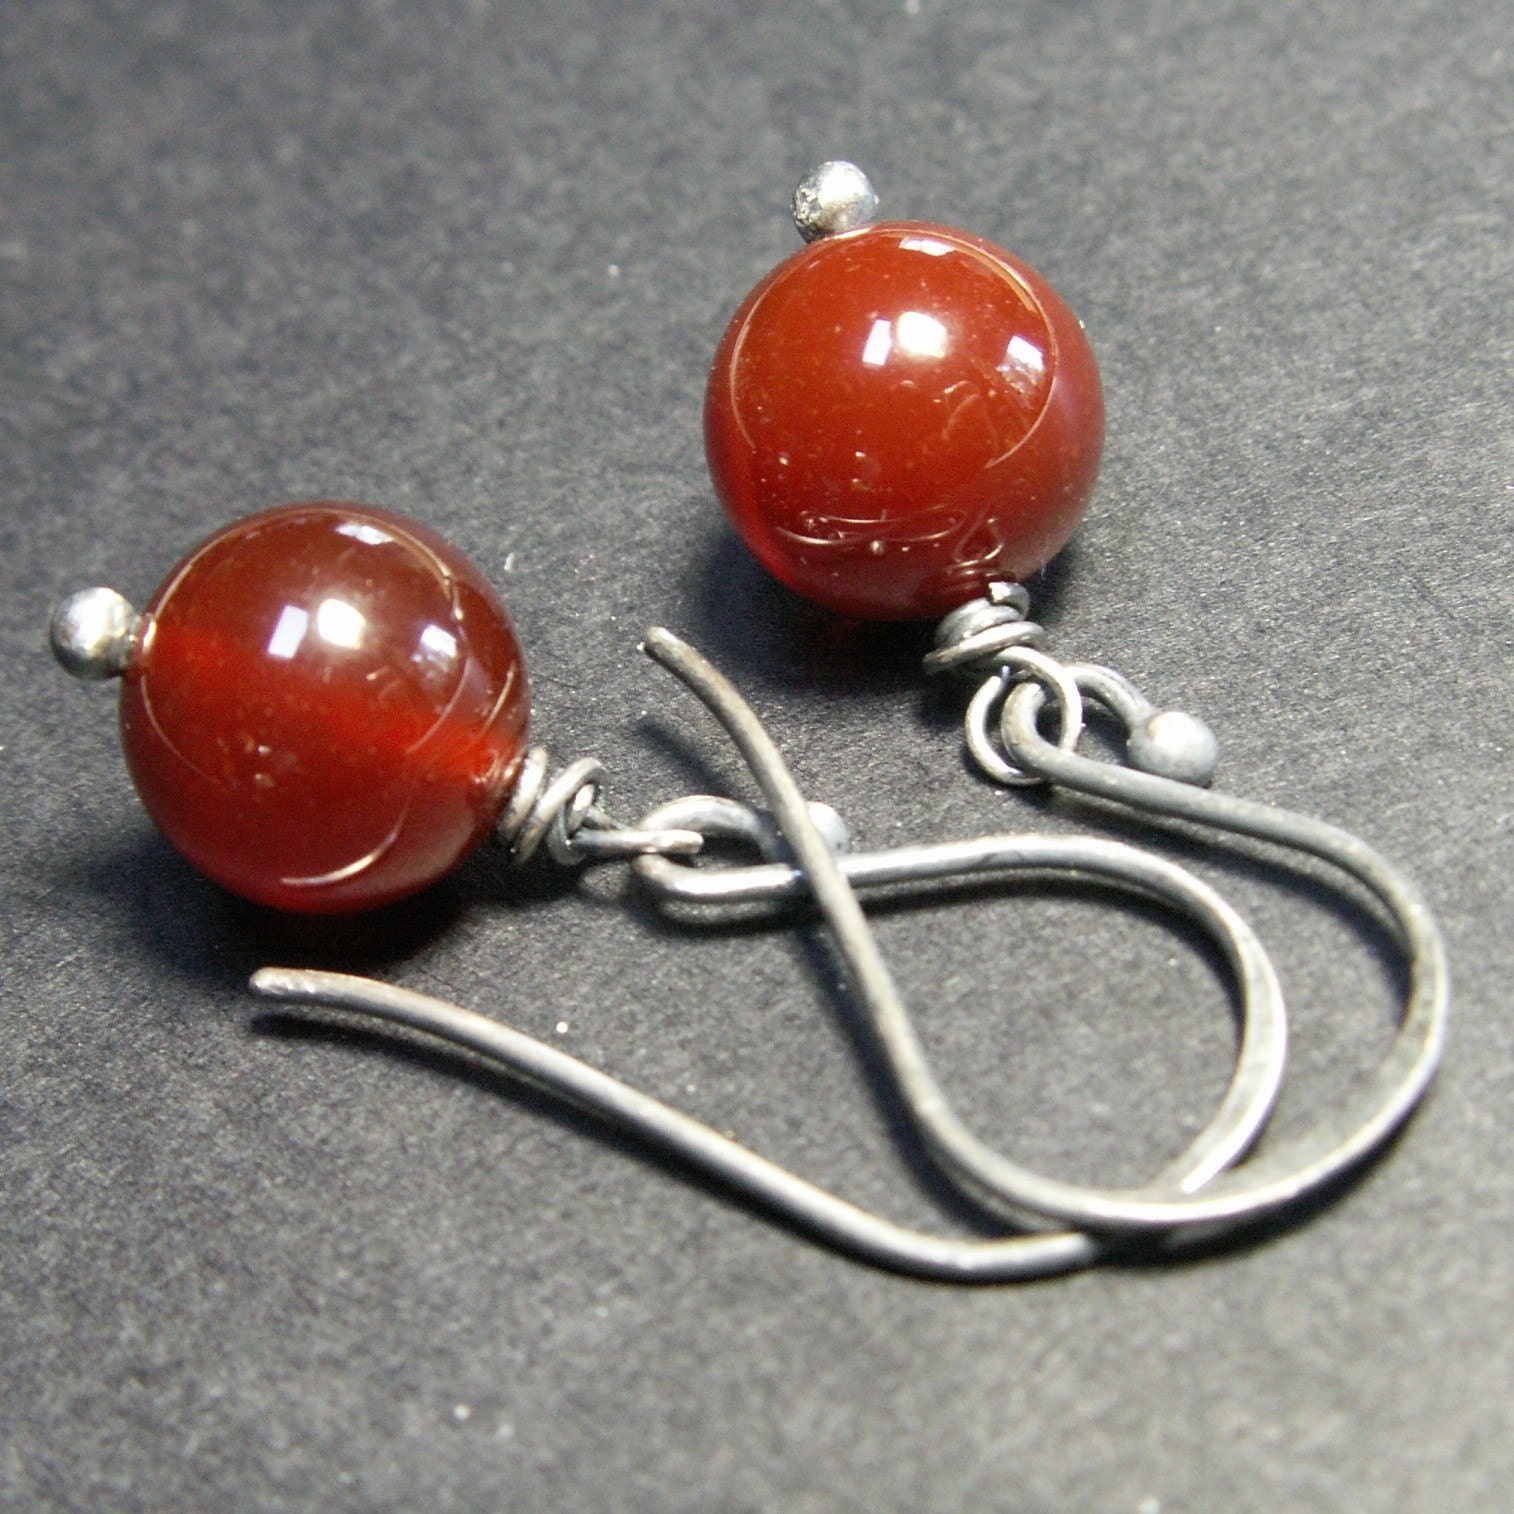 handcrafted jewelry earrings sterling silver carnelian orange red